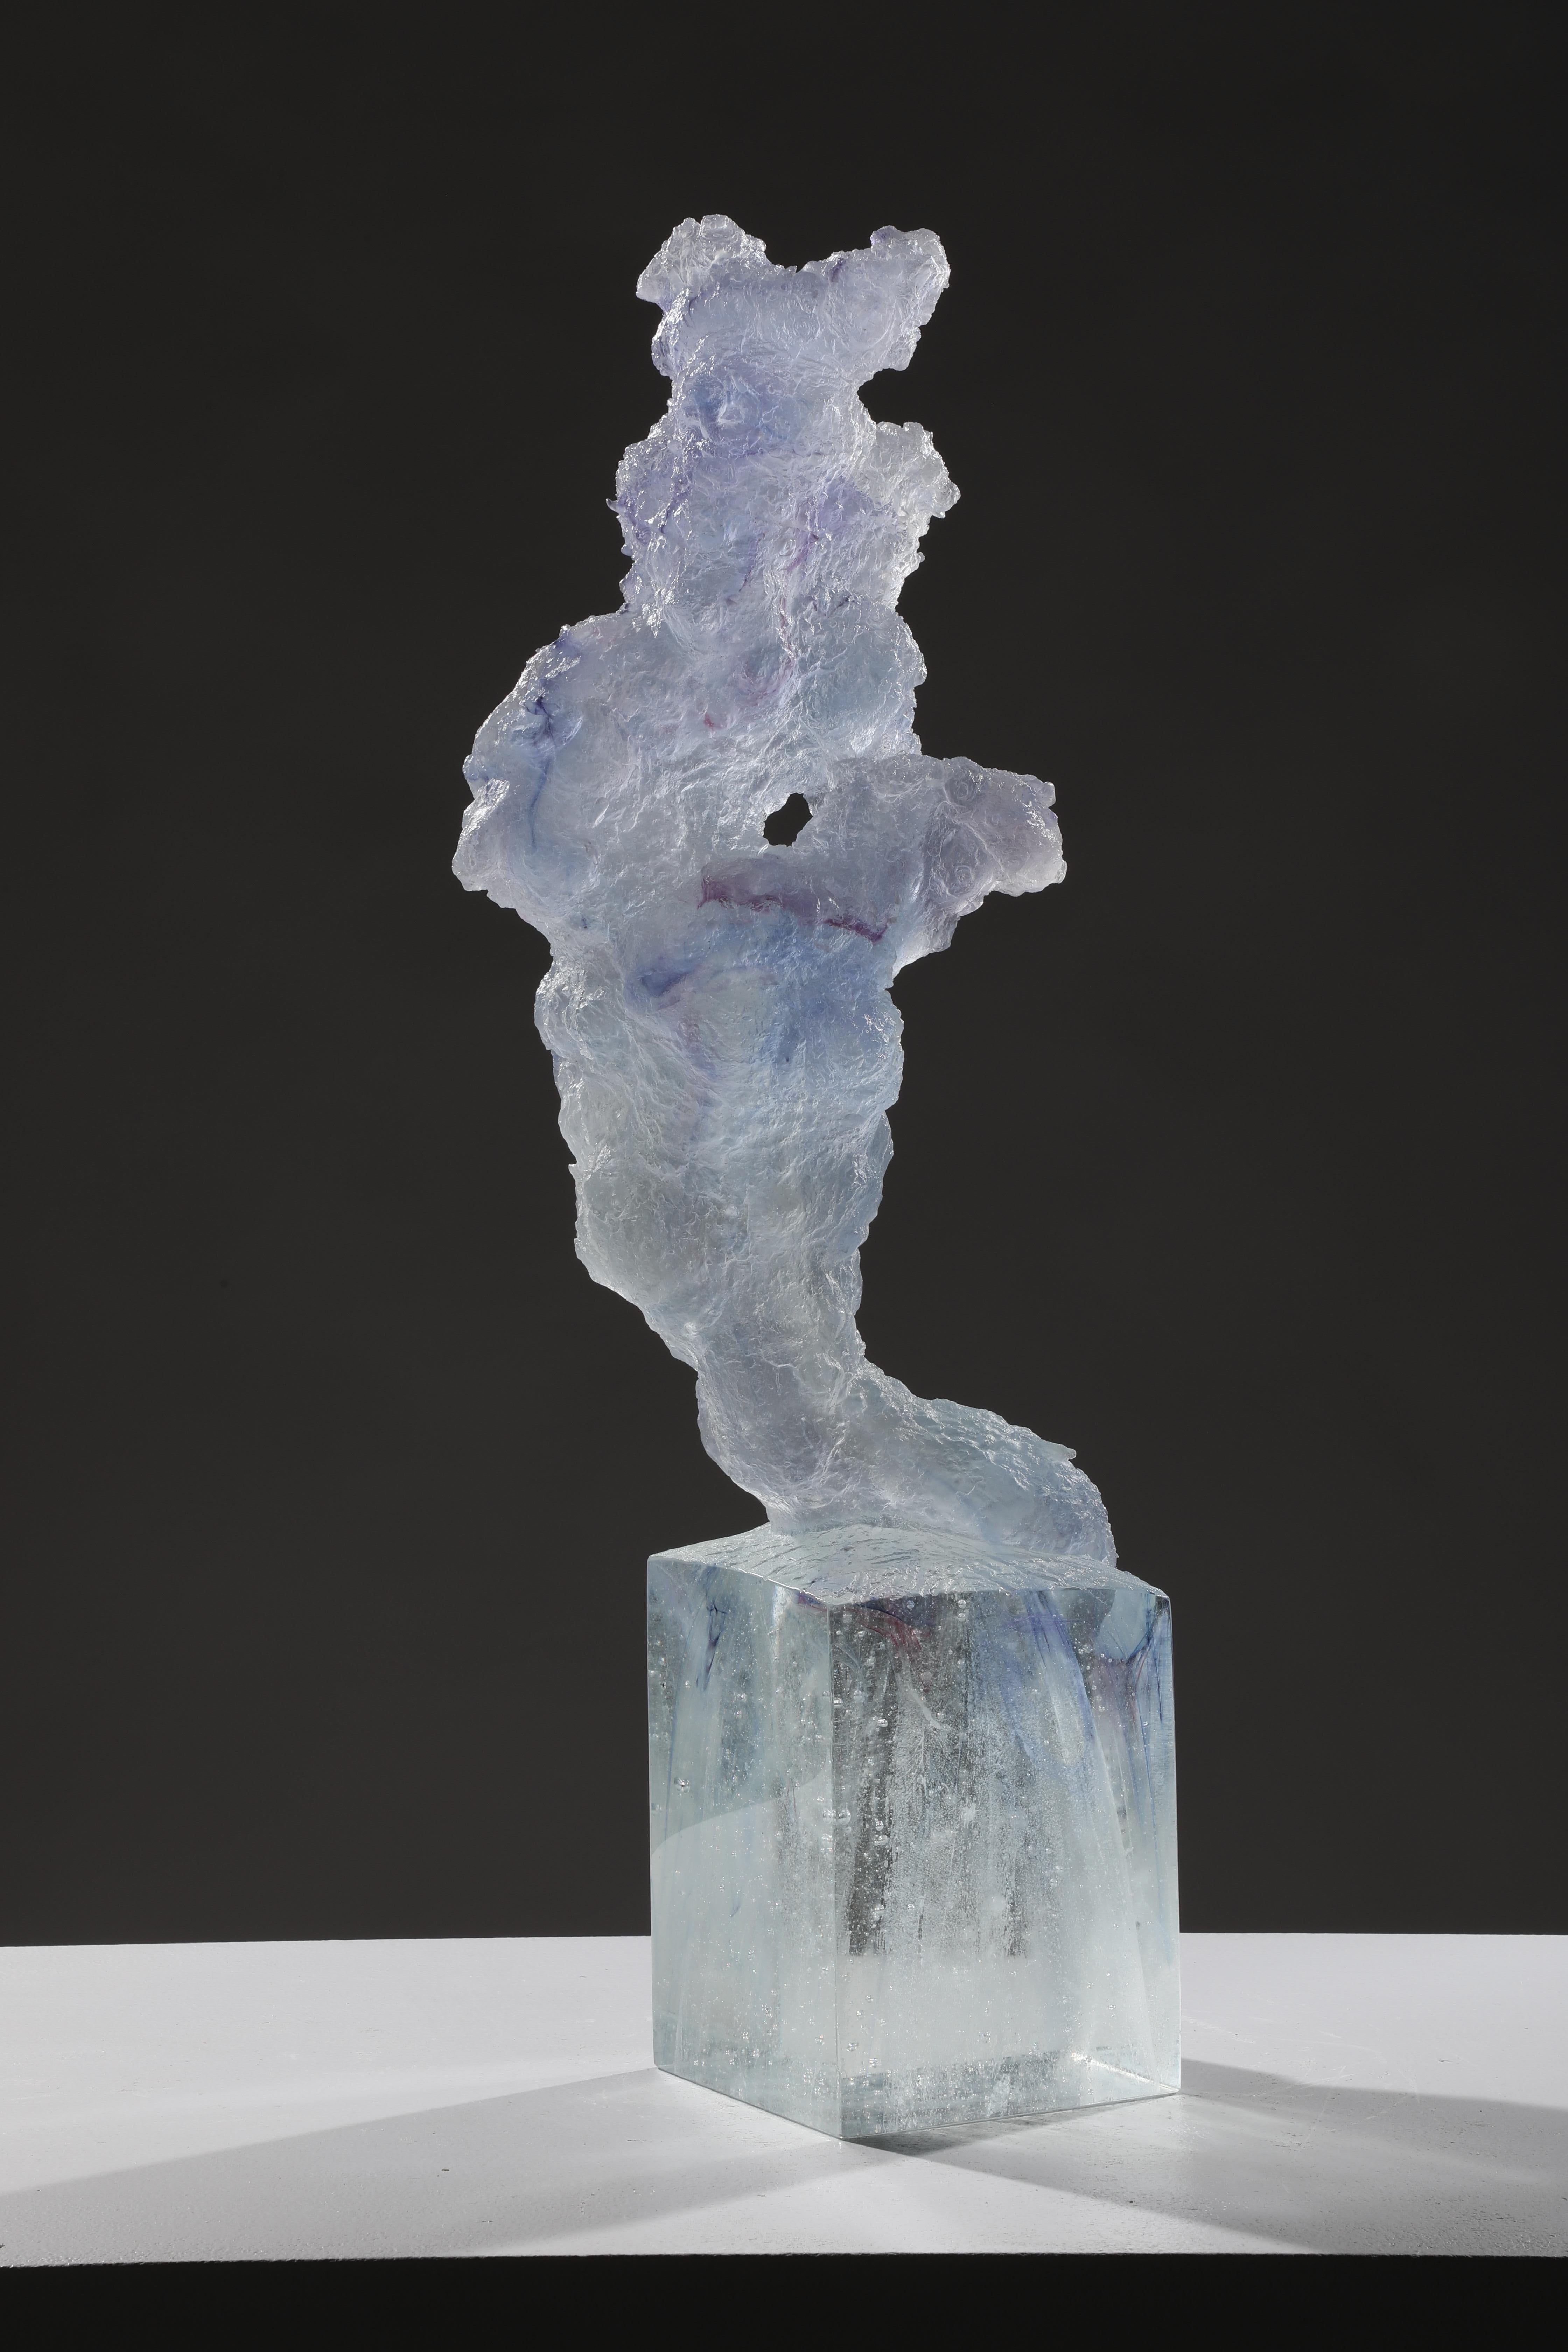 Malaita 1" ist eine zeitgenössische Gussglasskulptur von David Ruth aus der Chill Project Series. Die Serie ist eine von Davids ersten Versuchen, natürliche Formen in natürliches Glas zu gießen. Diese besondere Form wurde aus einer großen Efeu-Maser